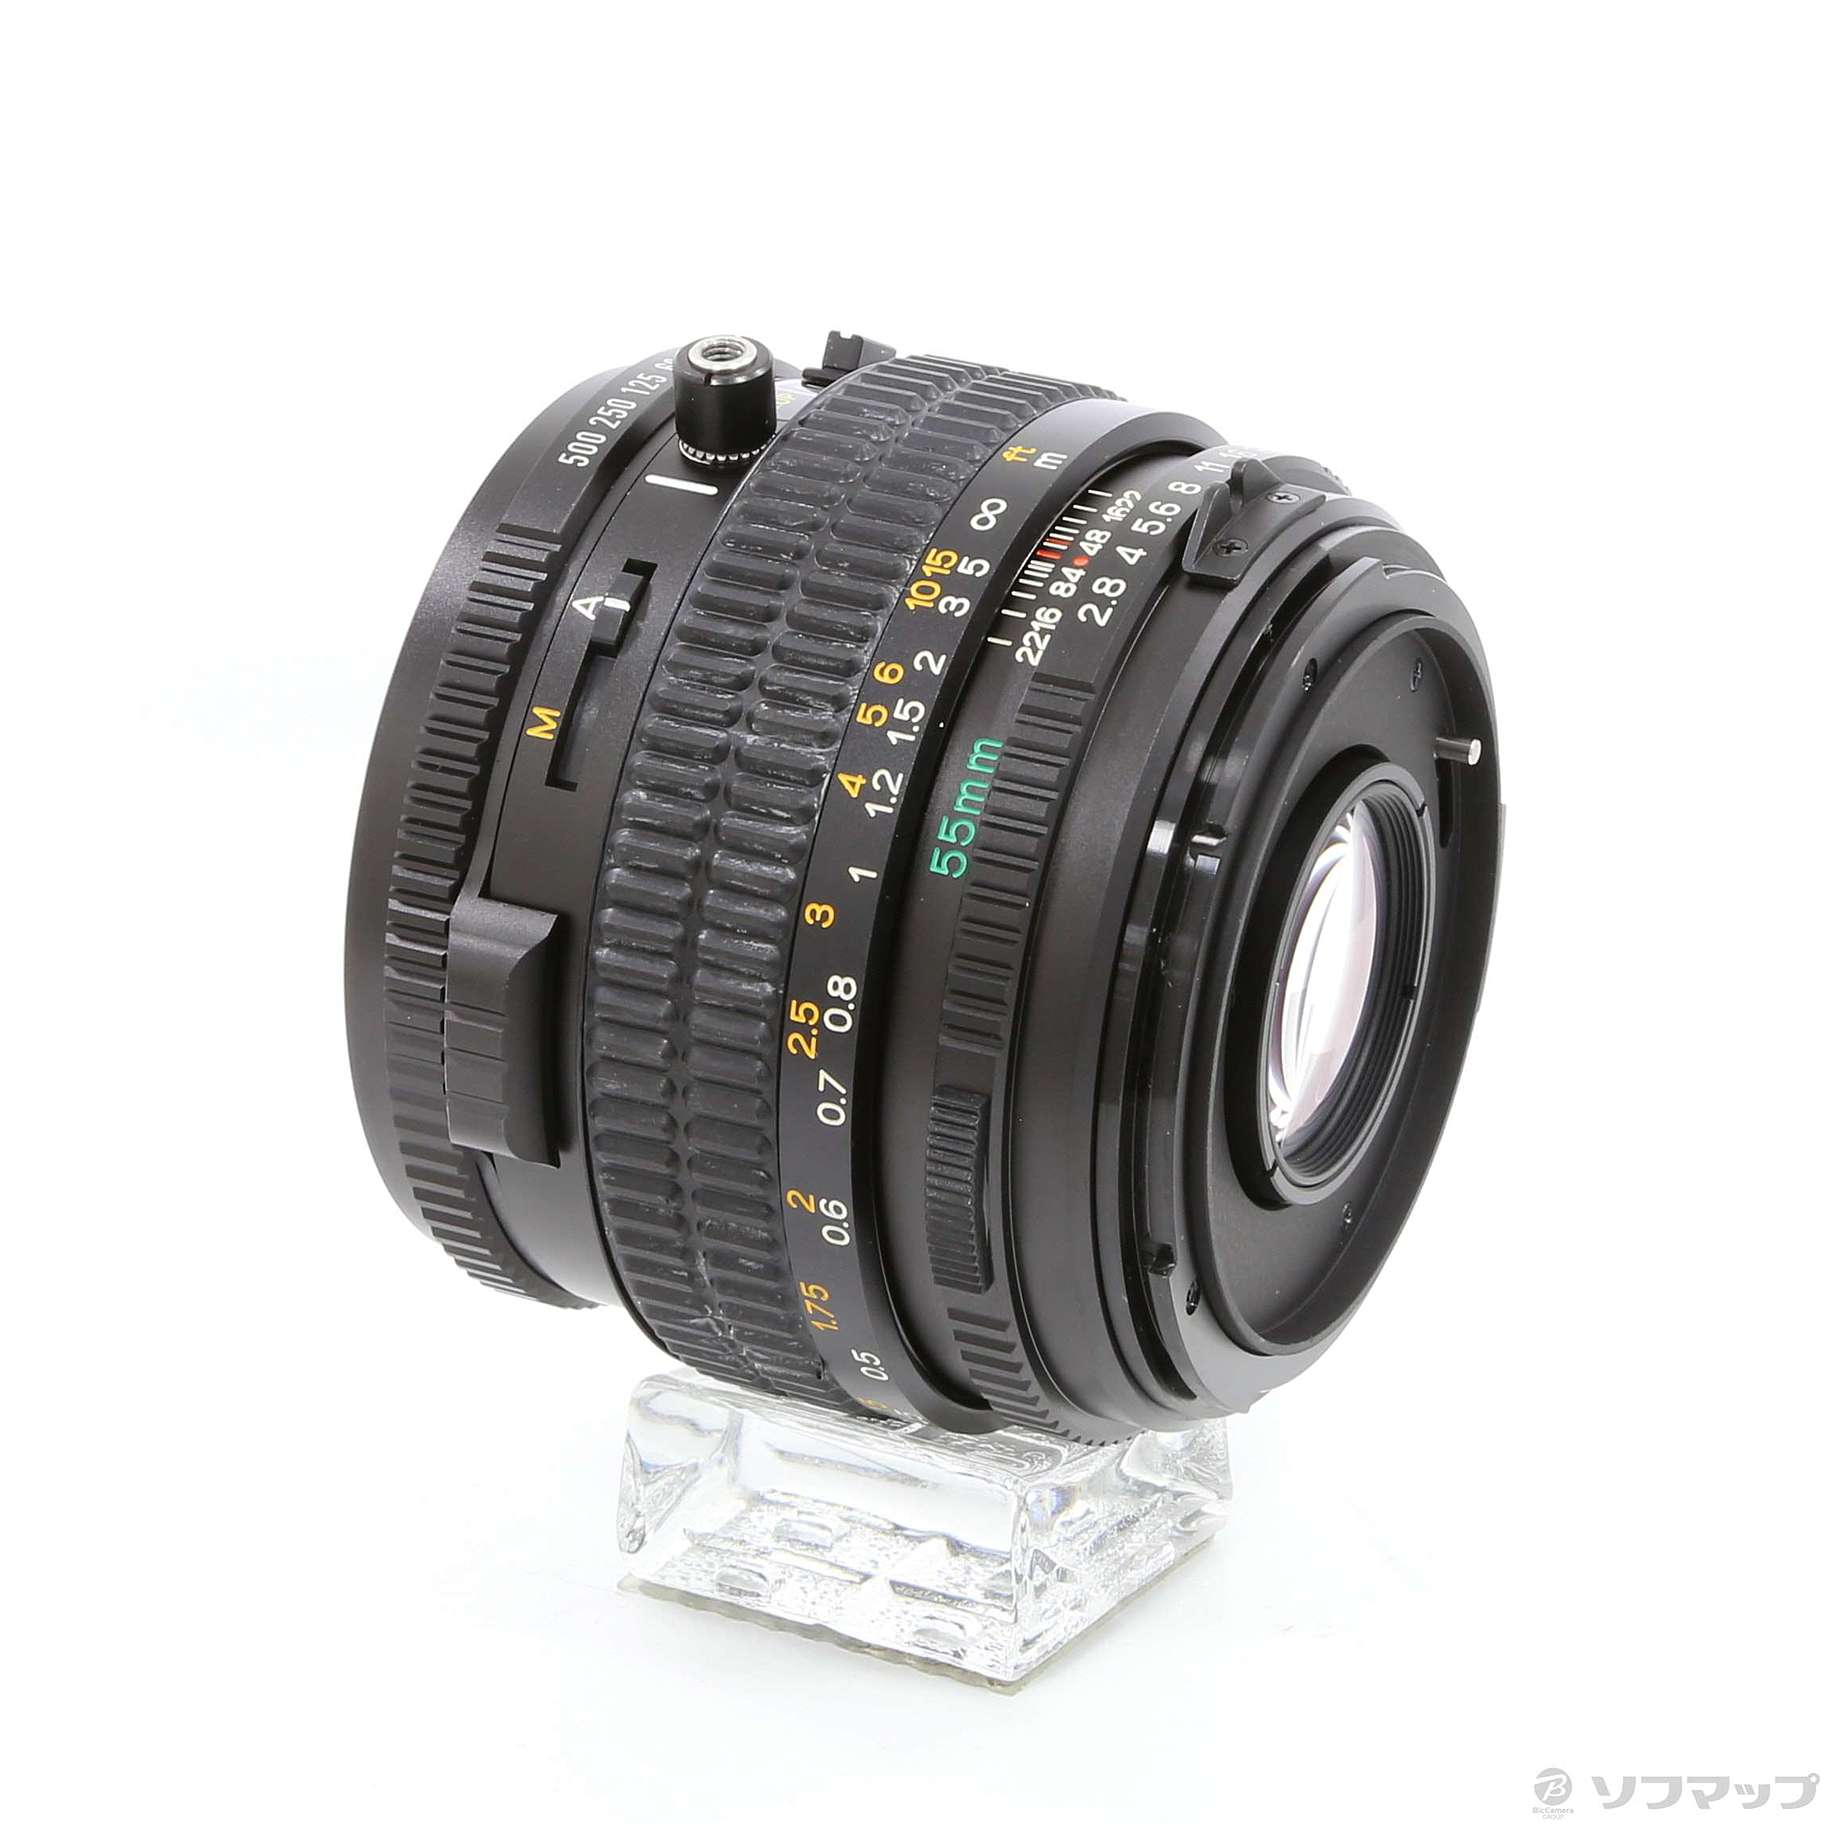 欲しいの マミヤ645 N/L f2.8 55mm A - レンズ(単焦点) - labelians.fr